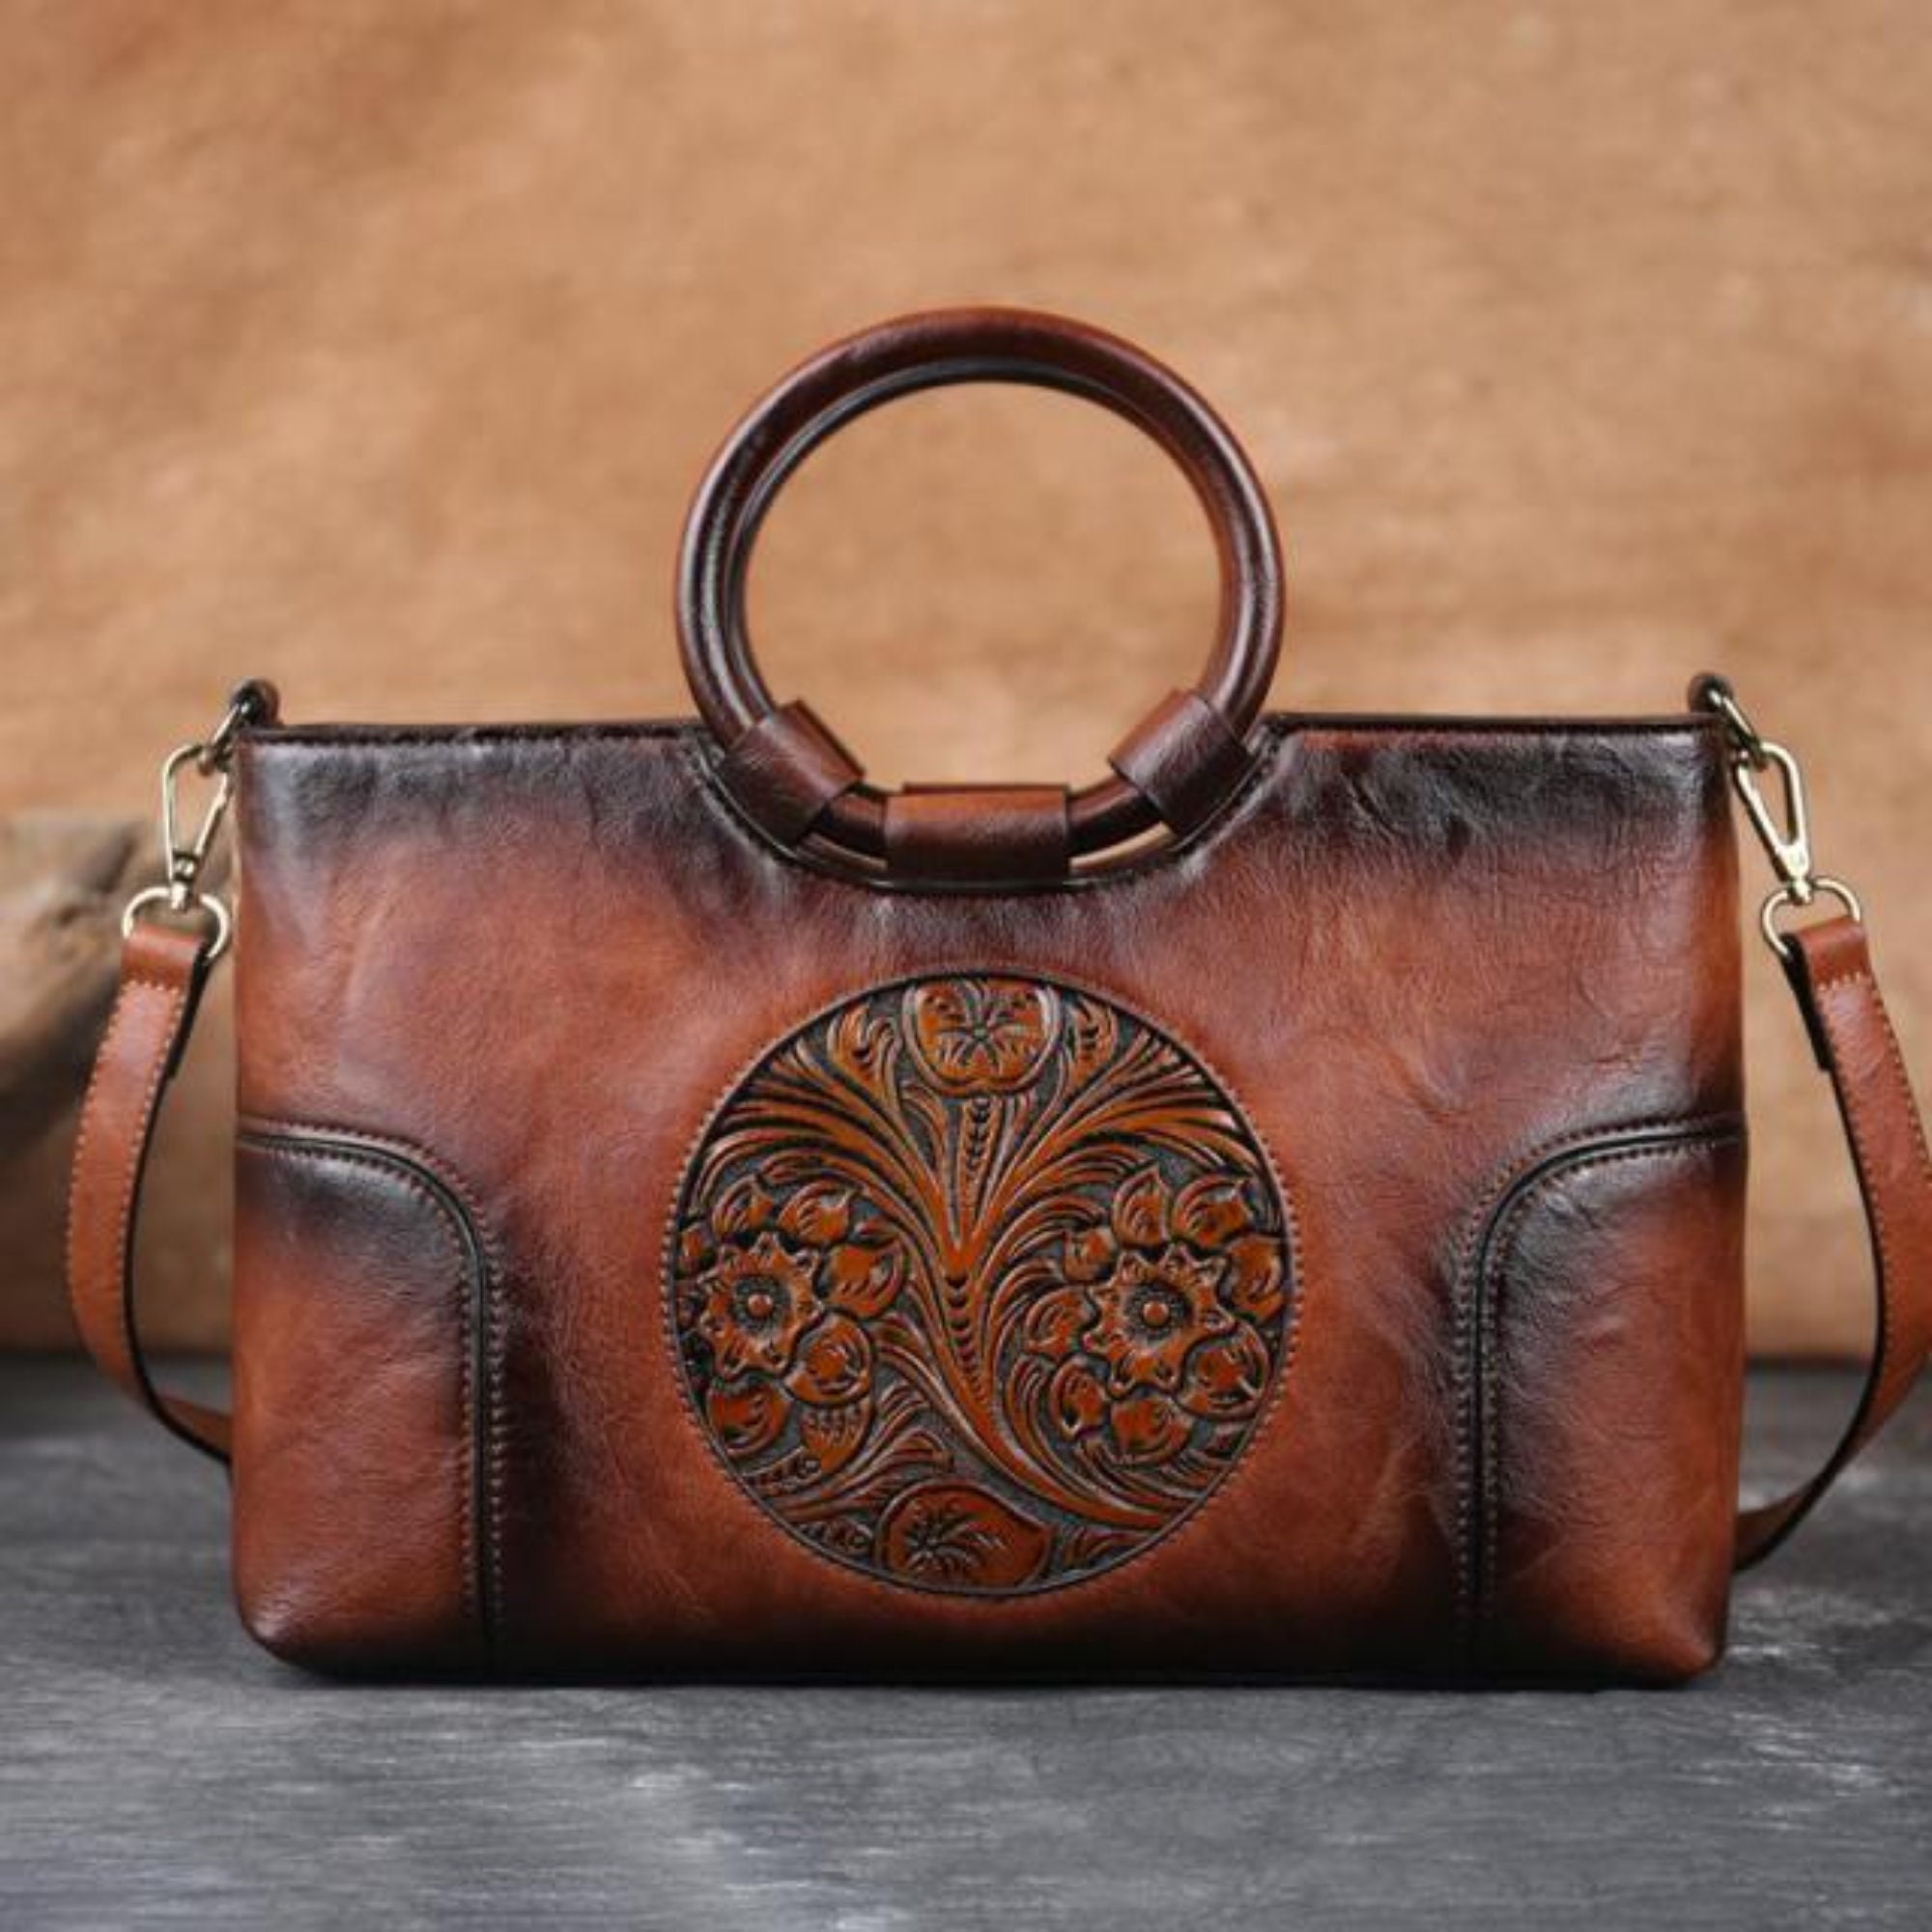 Jessica simpson handbag purse - Gem